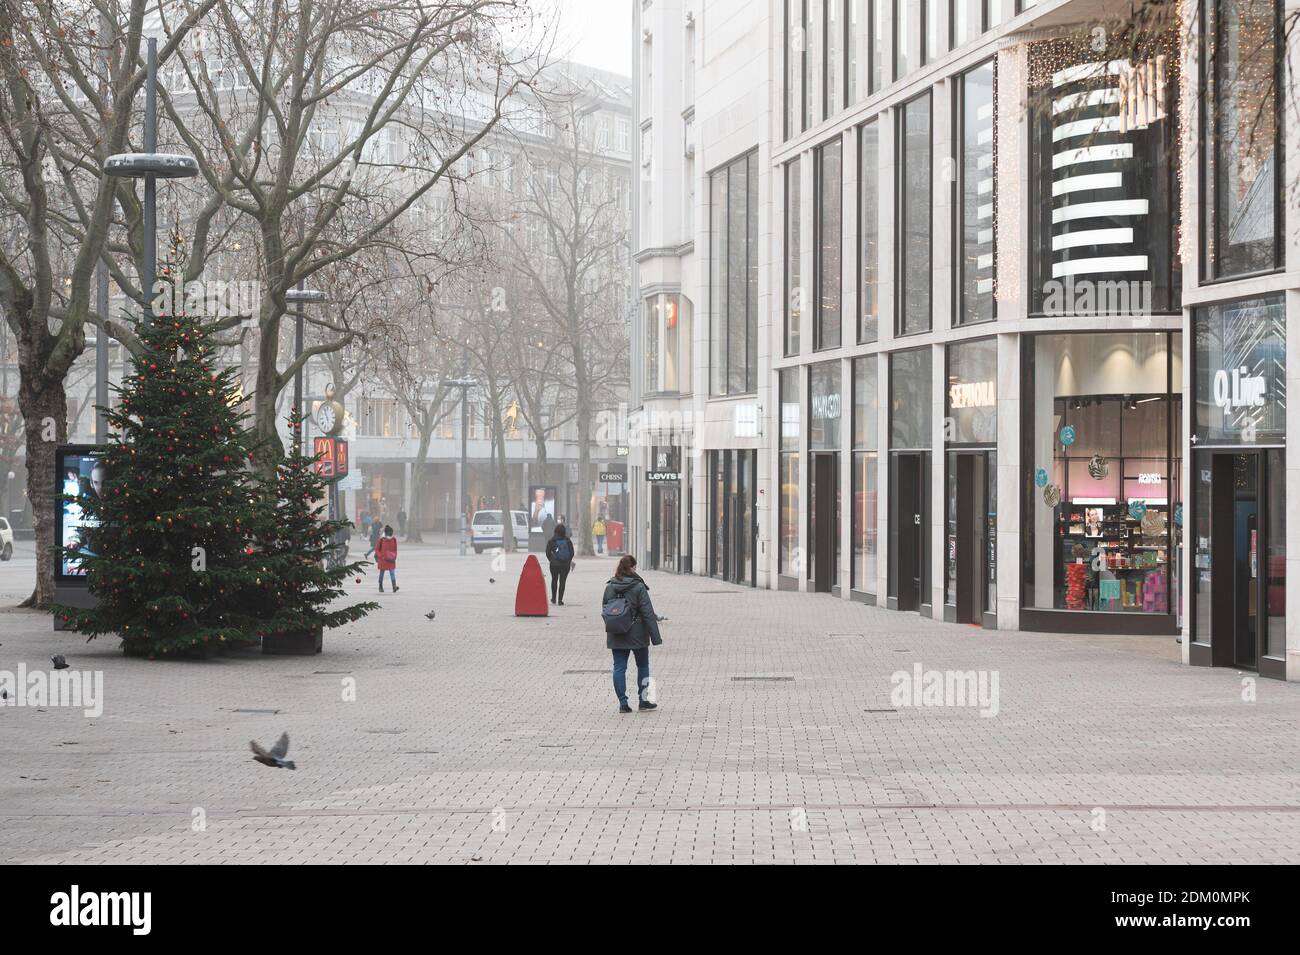 Hamburg, Deutschland. Dezember 2020. Nur wenige Passanten befinden sich an der Einkaufsstraße Spitalerstrasse. Quelle: Daniel Reinhardt/dpa/Alamy Live News Stockfoto